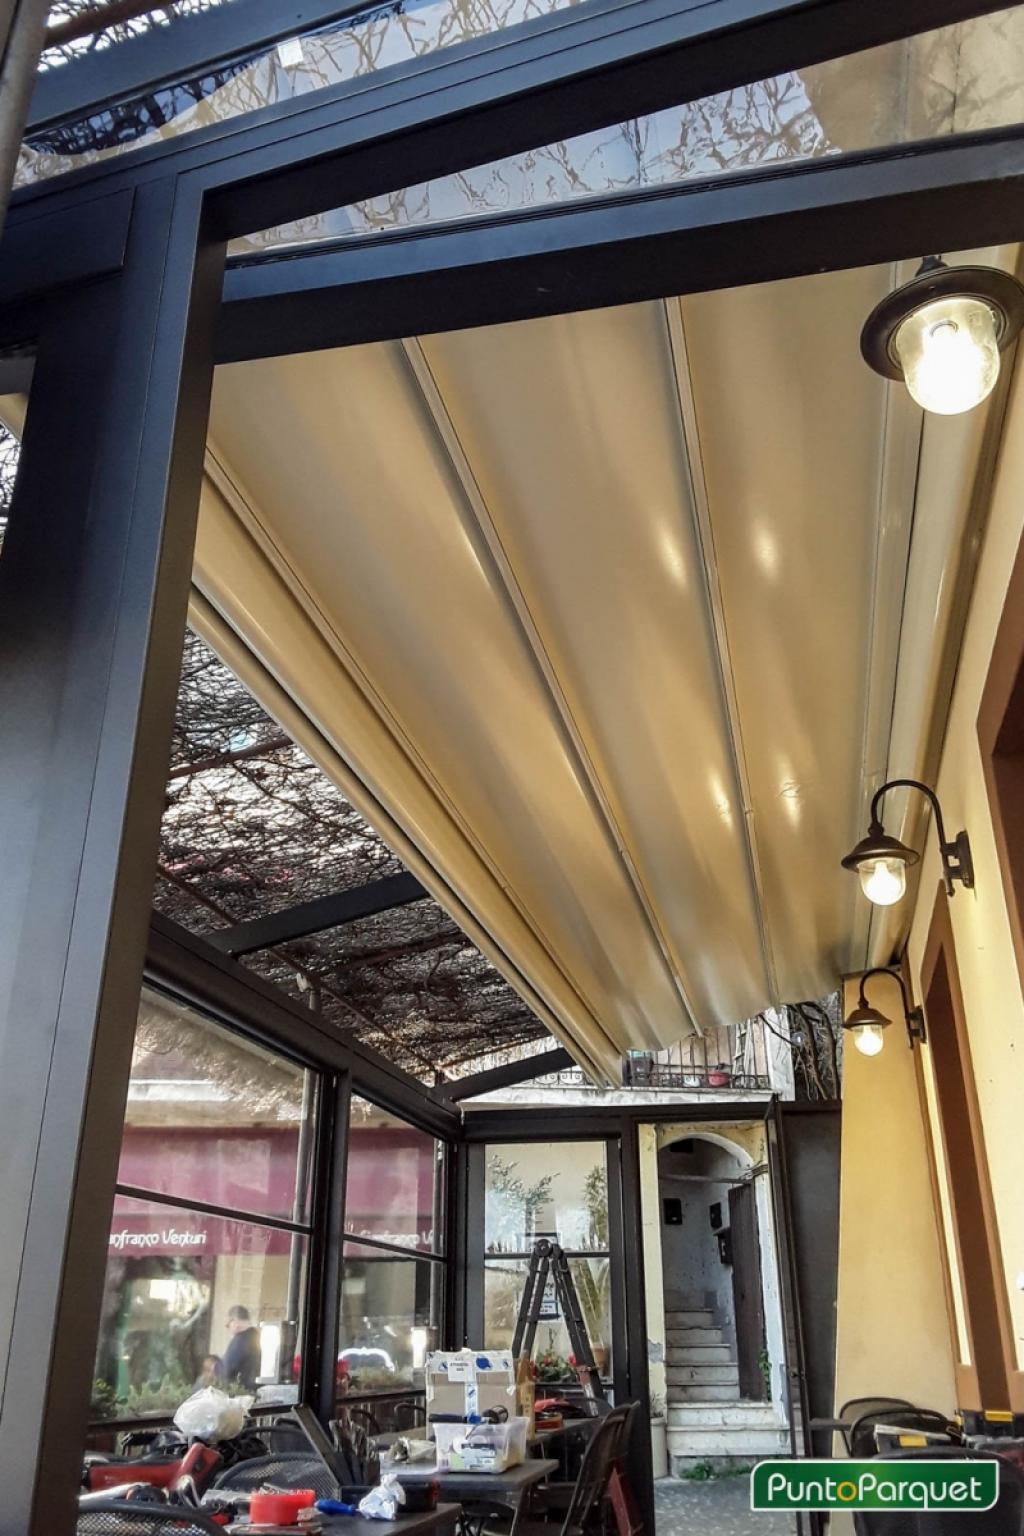 Installazione pergola in pvc ed alluminio anodizzato nero per dehor ristorante - Osteria Cantinella - Trevignano Romano - Lago di Bracciano - Roma